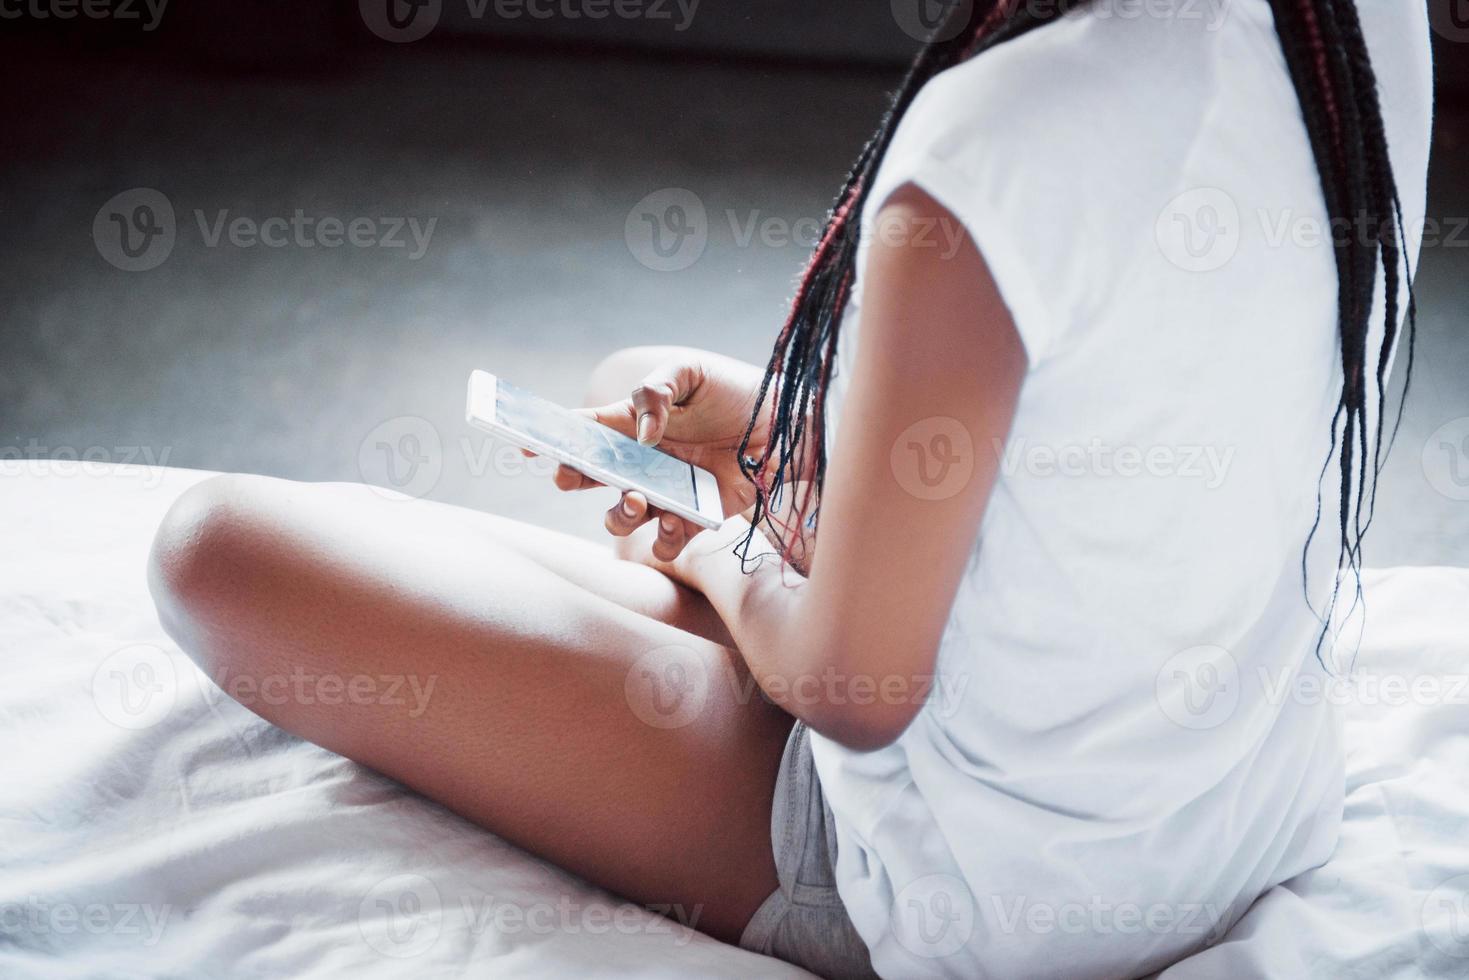 portret van mooie vrouw wakker in haar bed en kijkt in de telefoon. controleer sociale netwerken, stuur sms. het meisje draagt een t-shirt foto